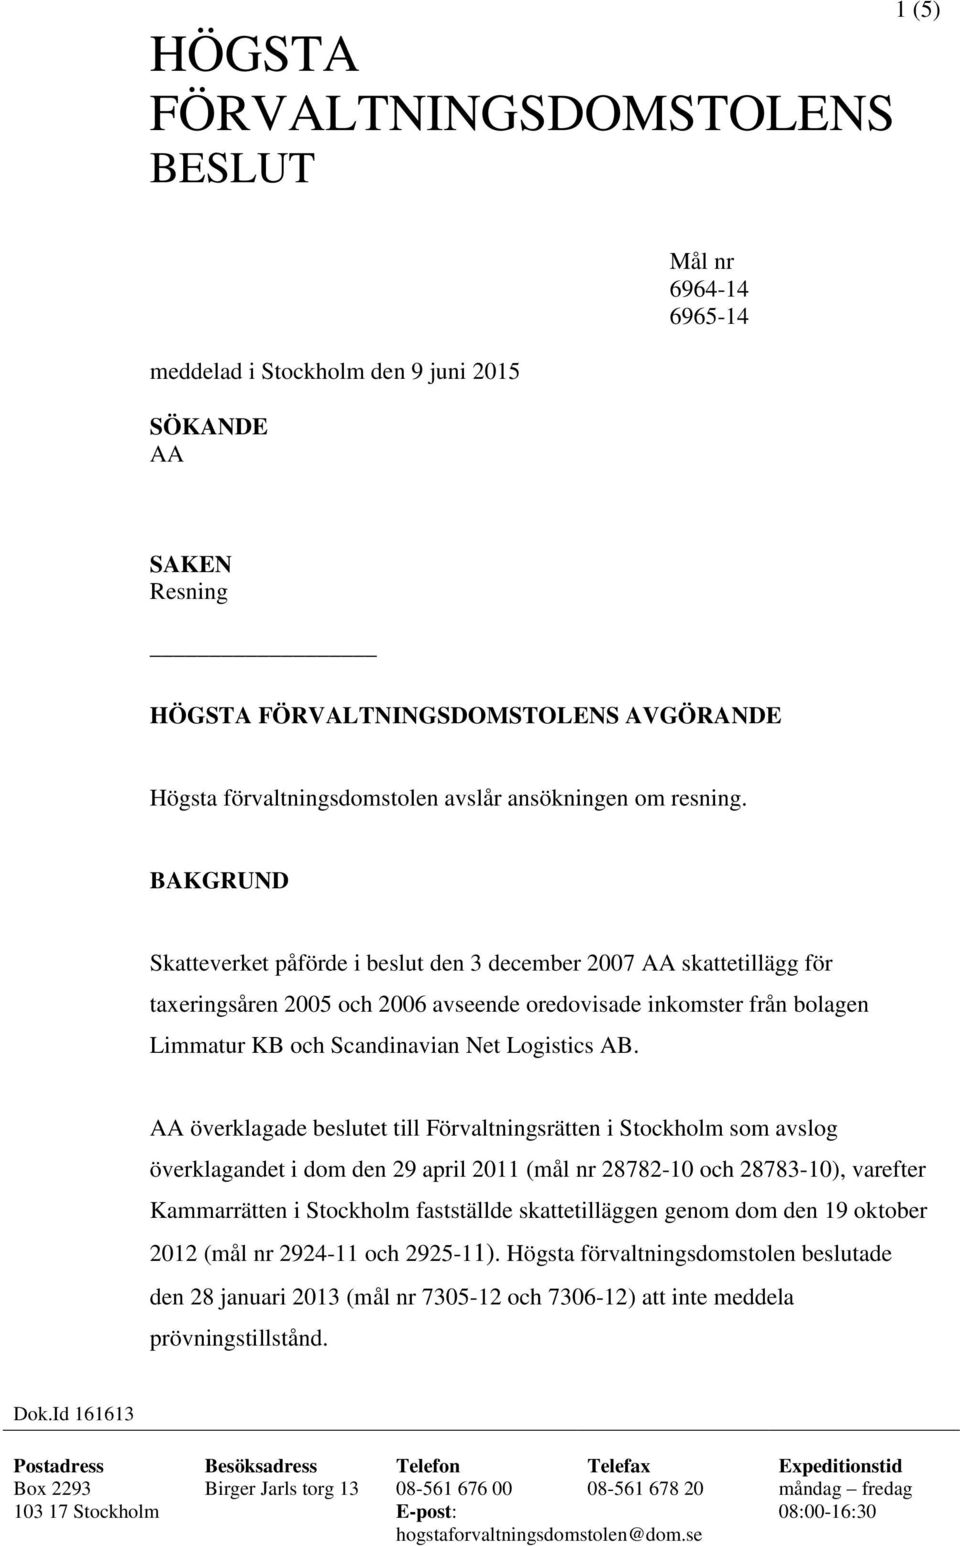 BAKGRUND Skatteverket påförde i beslut den 3 december 2007 AA skattetillägg för taxeringsåren 2005 och 2006 avseende oredovisade inkomster från bolagen Limmatur KB och Scandinavian Net Logistics AB.